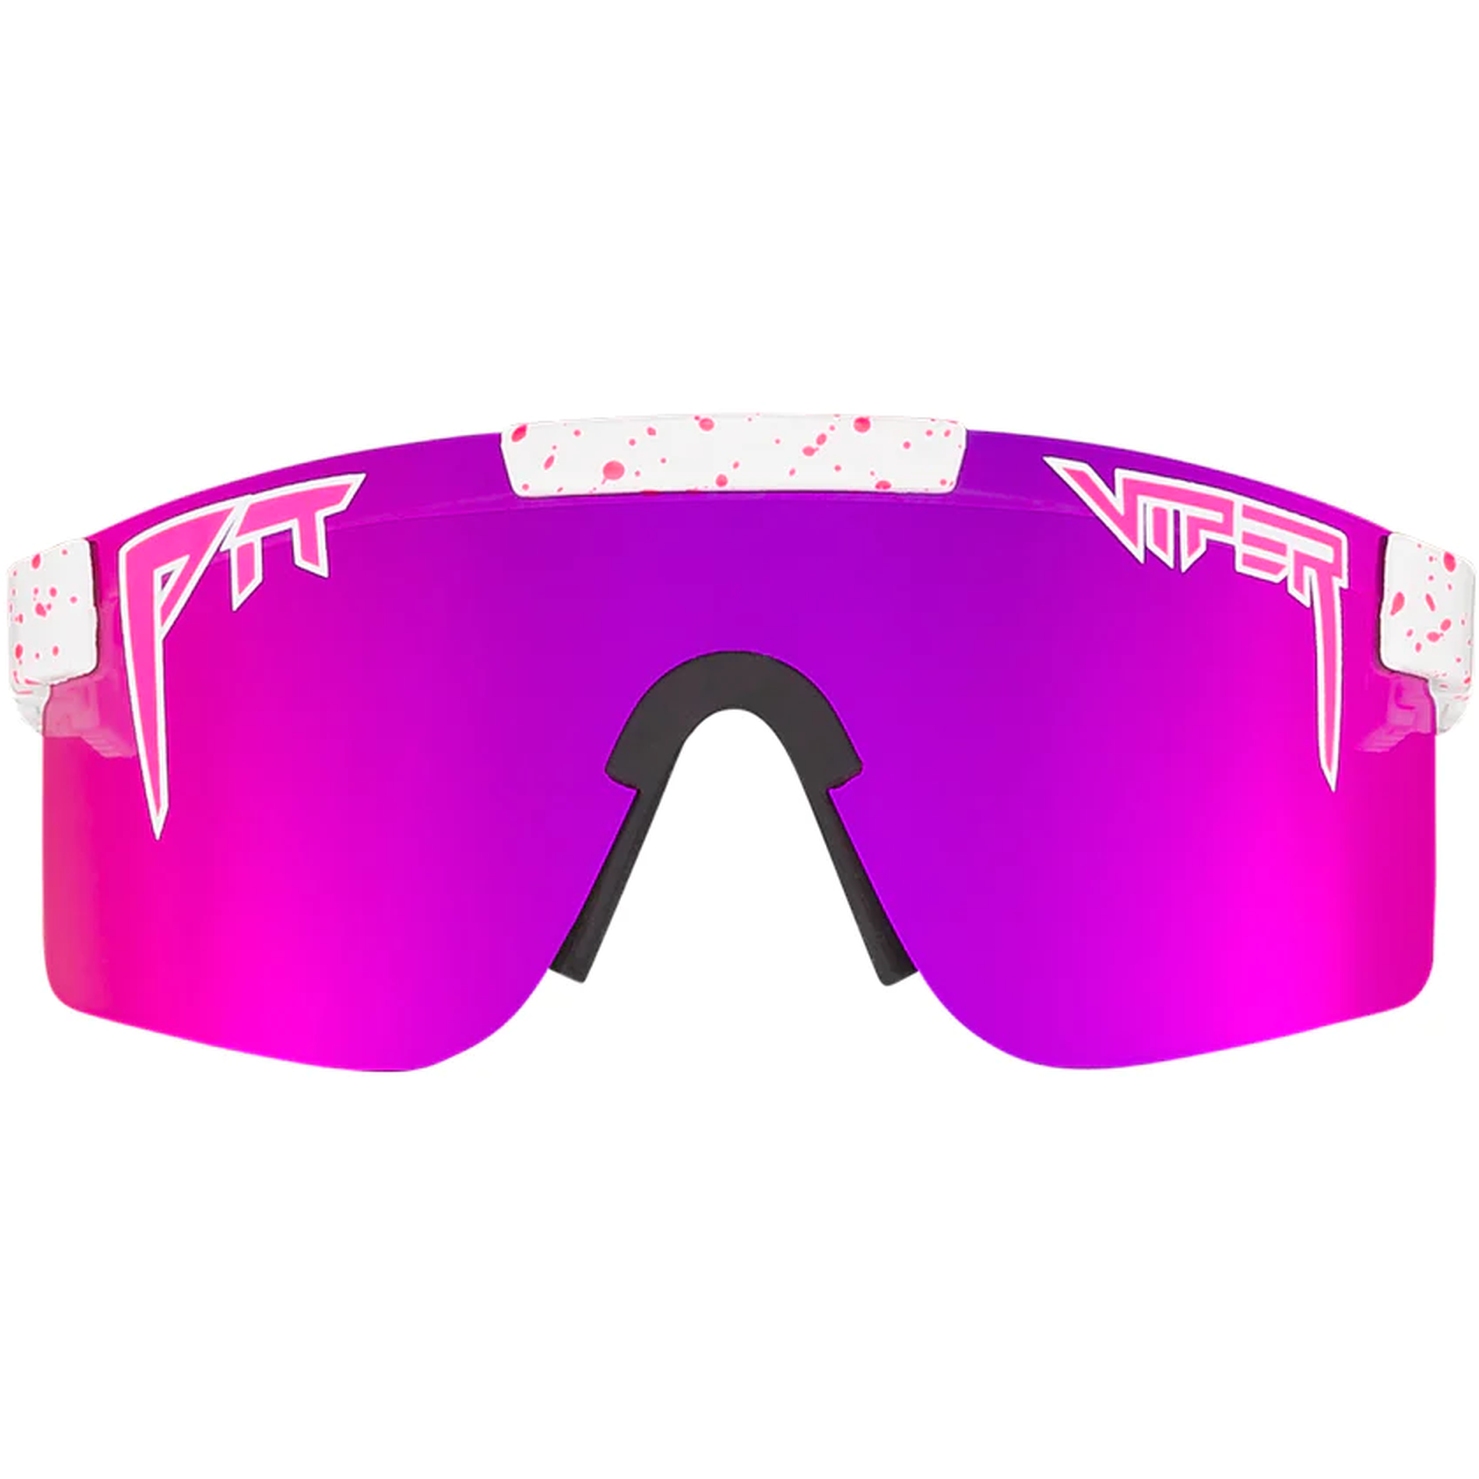 Produktbild von Pit Viper The Originals Brille - Single Wide - The LA Brights / Polarized Pink Revo Mirror